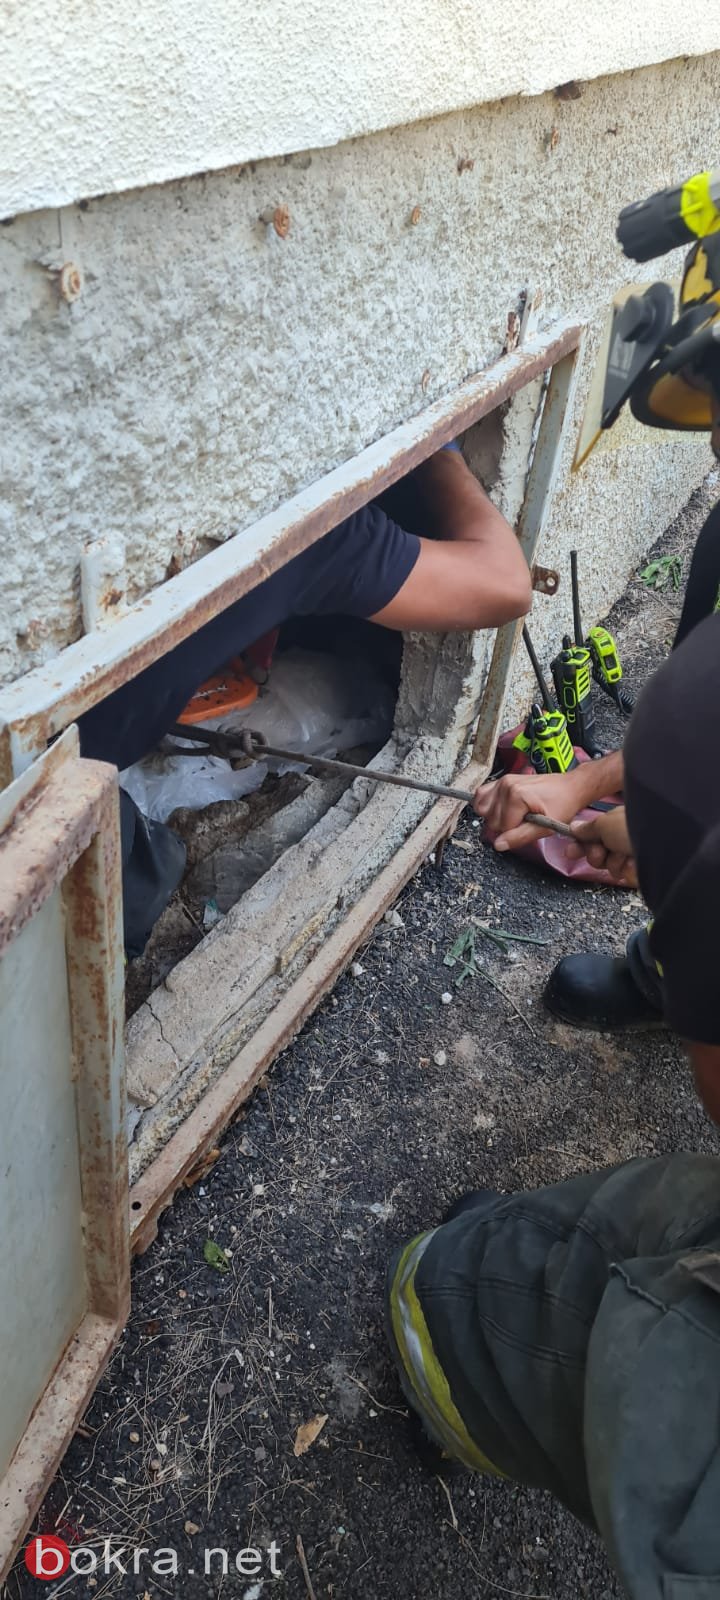 حيفا: تخليص عامل بعد إصابته بحادث عمل-3